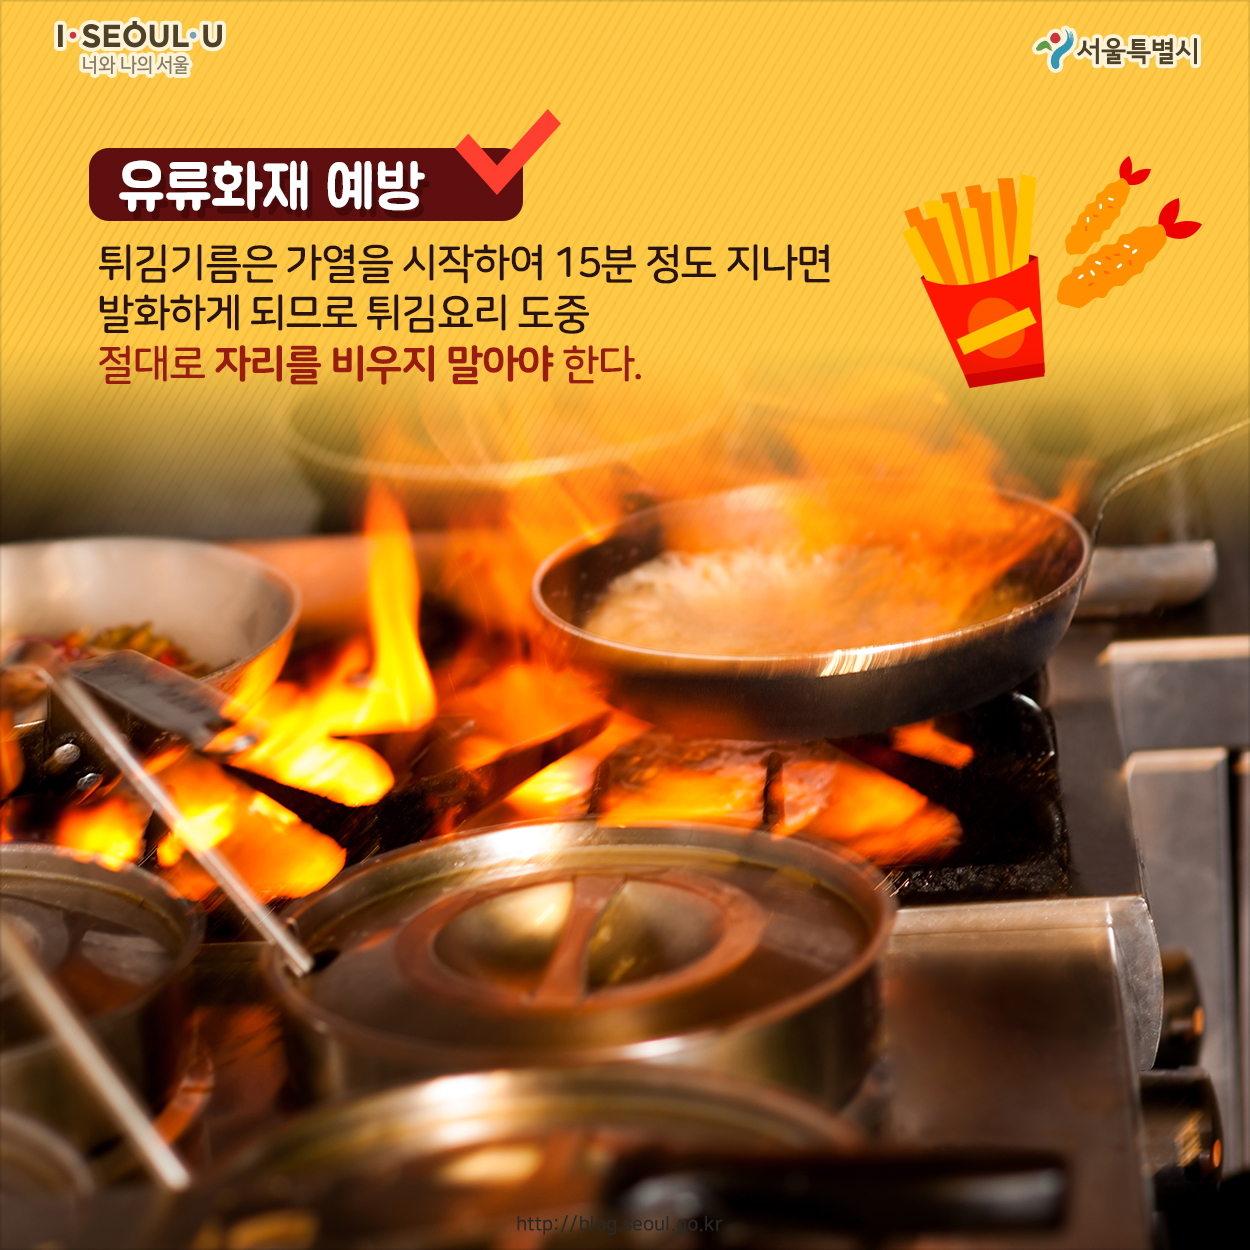 # 유류화재 예방 튀김기름은 가열을 시작하여 15분 정도 지나면 발화하게 되므로 튀김요리 도중 절대로 자리를 비우지 말아야 한다.